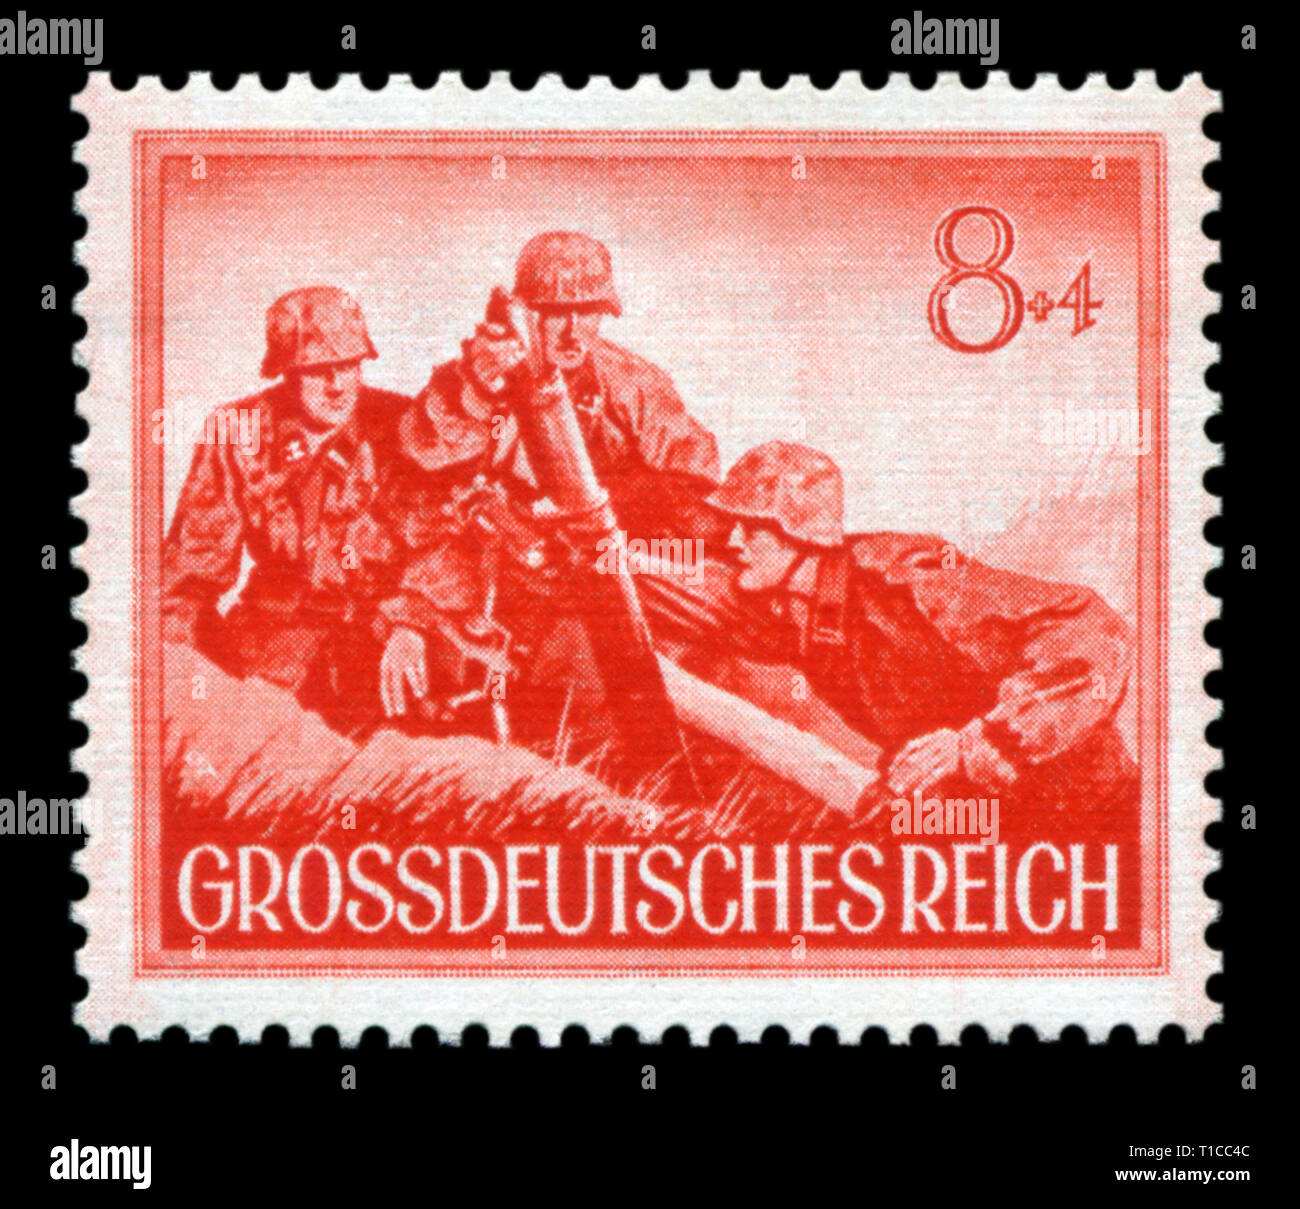 Timbre historique allemand : Le mortier unité d'élite de la Waffen SS. L'Armée du troisième Reich. Journée de commémoration des soldats tombés, numéro 1944 Banque D'Images